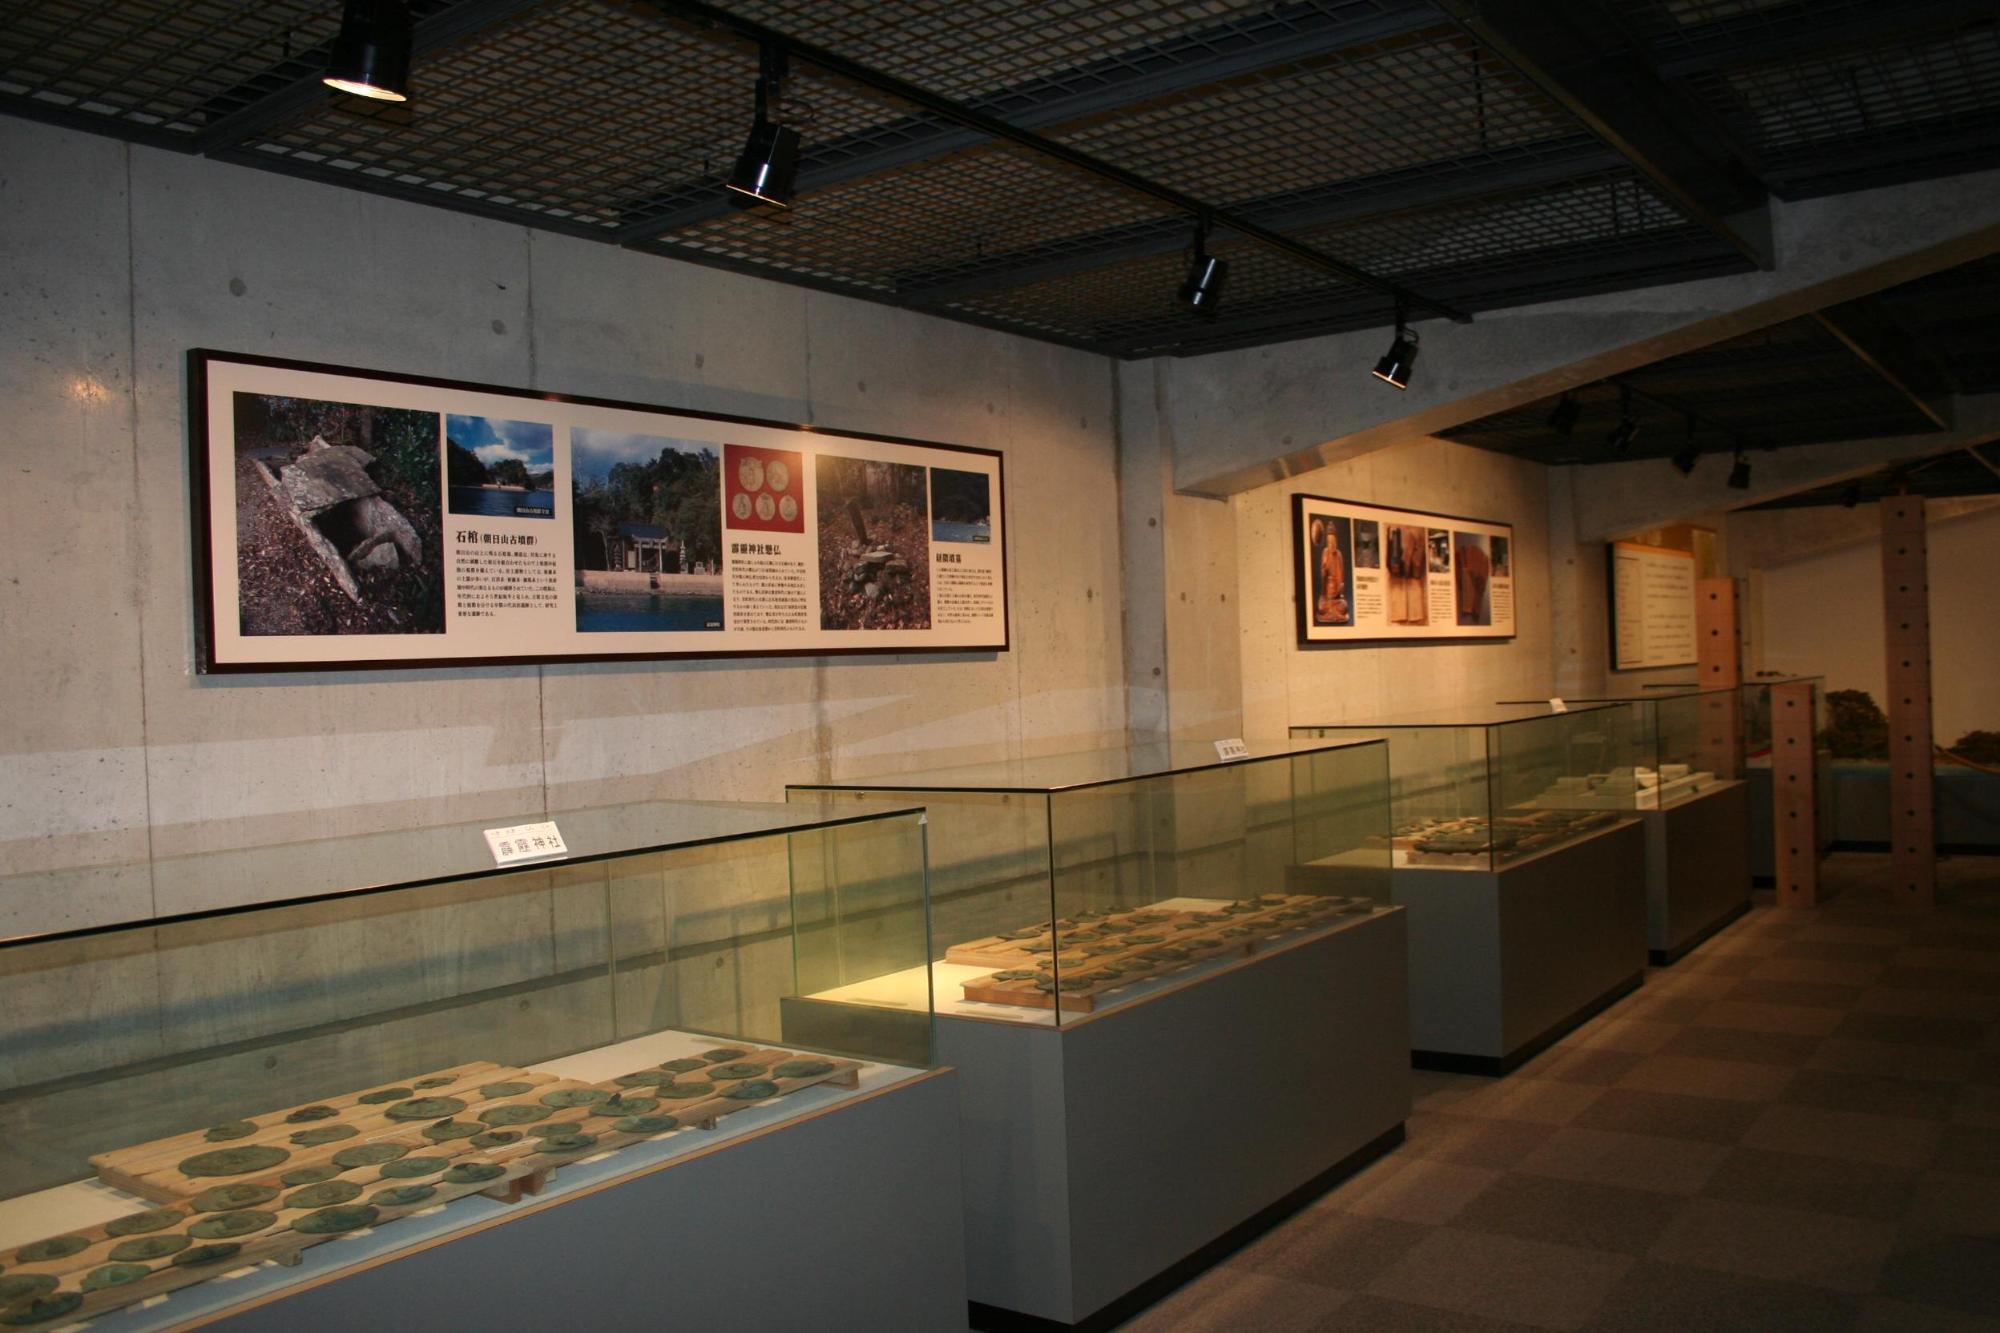 ショーケースに並ぶ展示品と壁に貼られた民族資料のパネルの写真